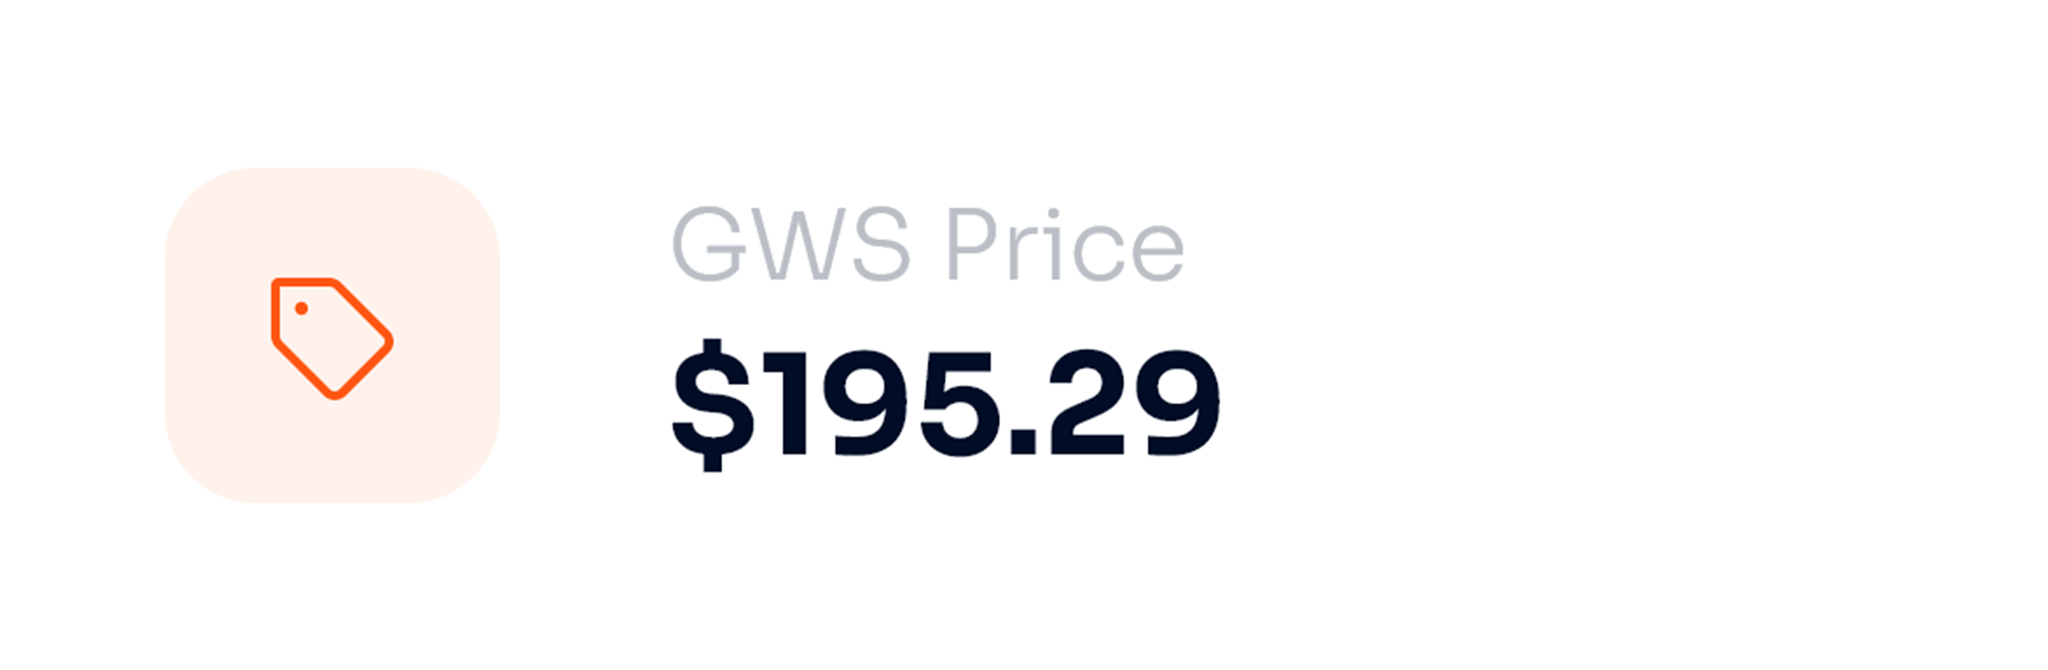 GWS Finance